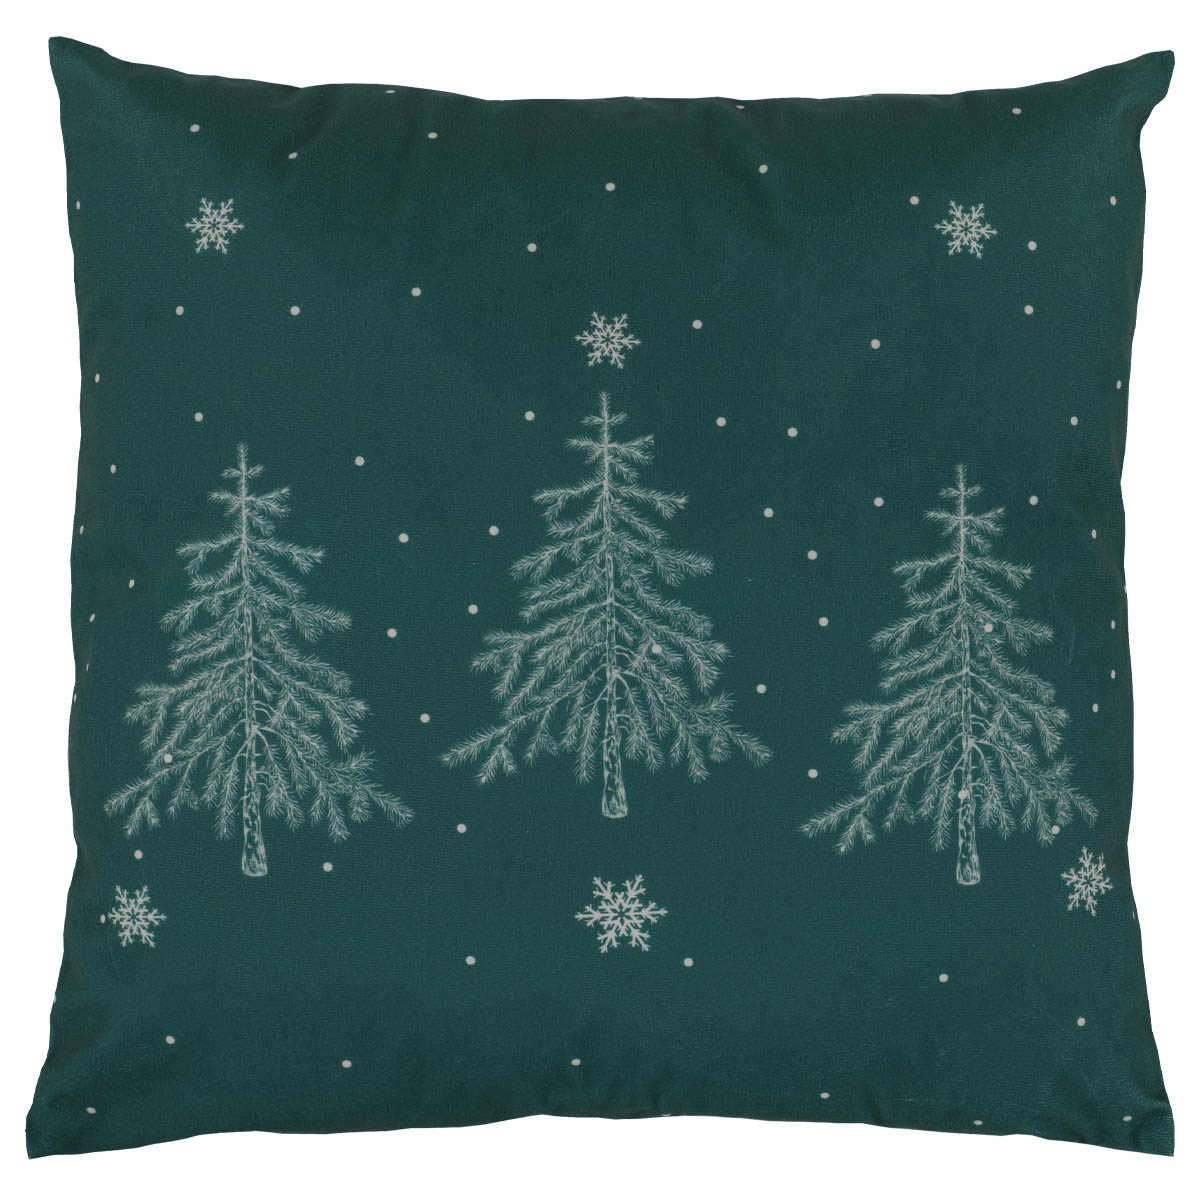 Polštář s výplní, samet. Vánoční motiv, stromek na zeleném podkladu. 45x45 cm.